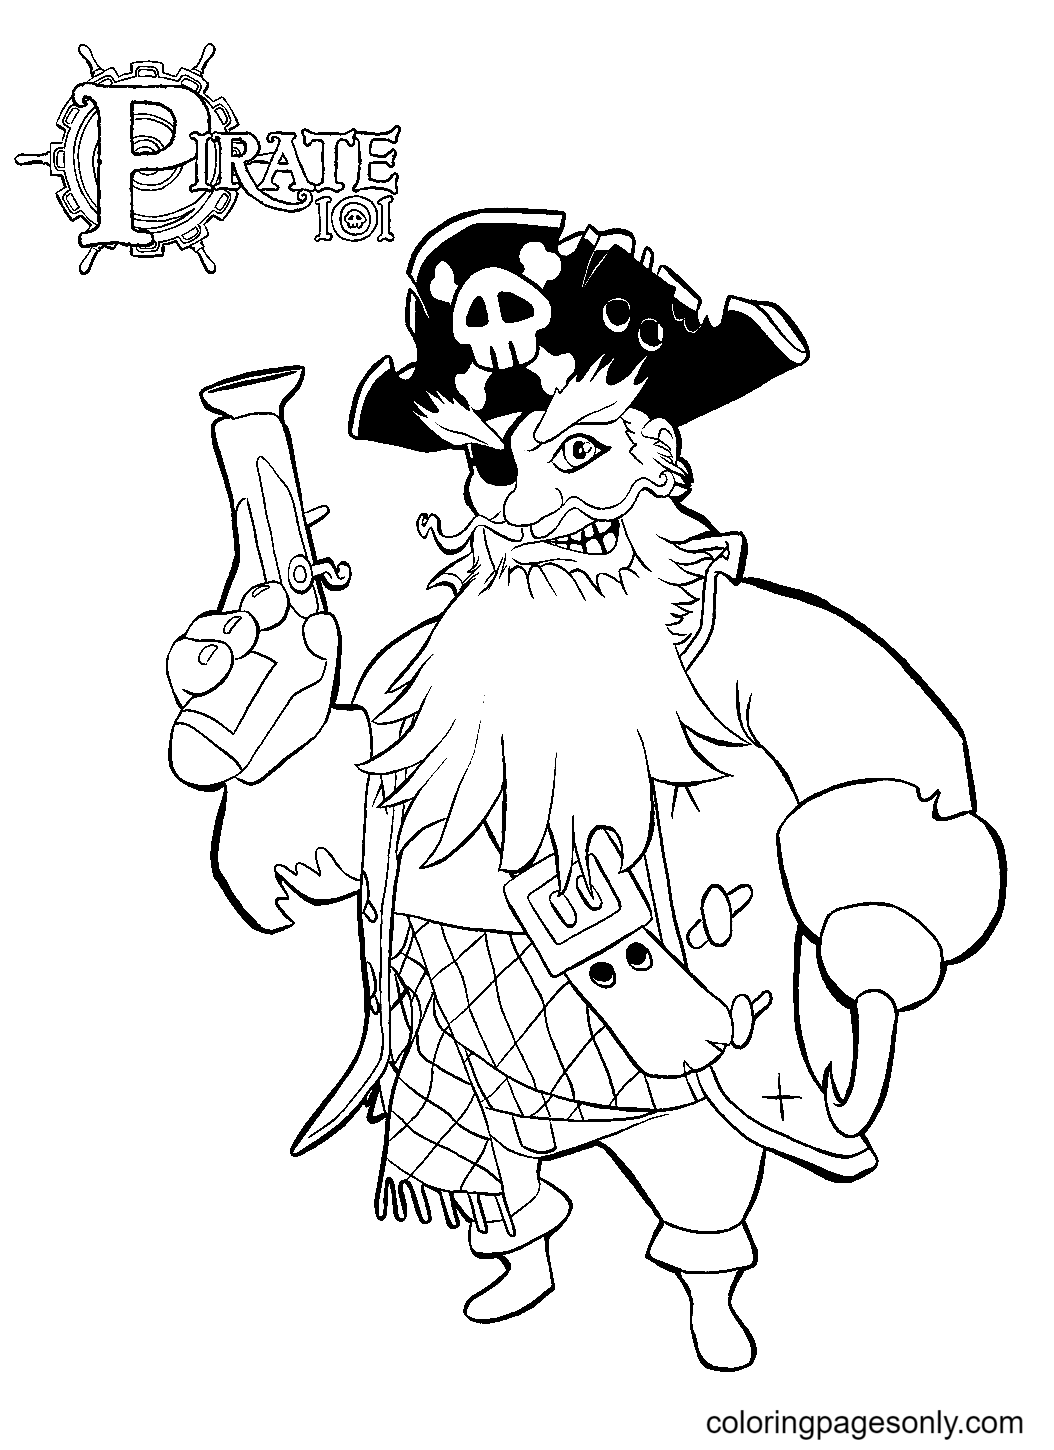 Enge piraat van Pirate